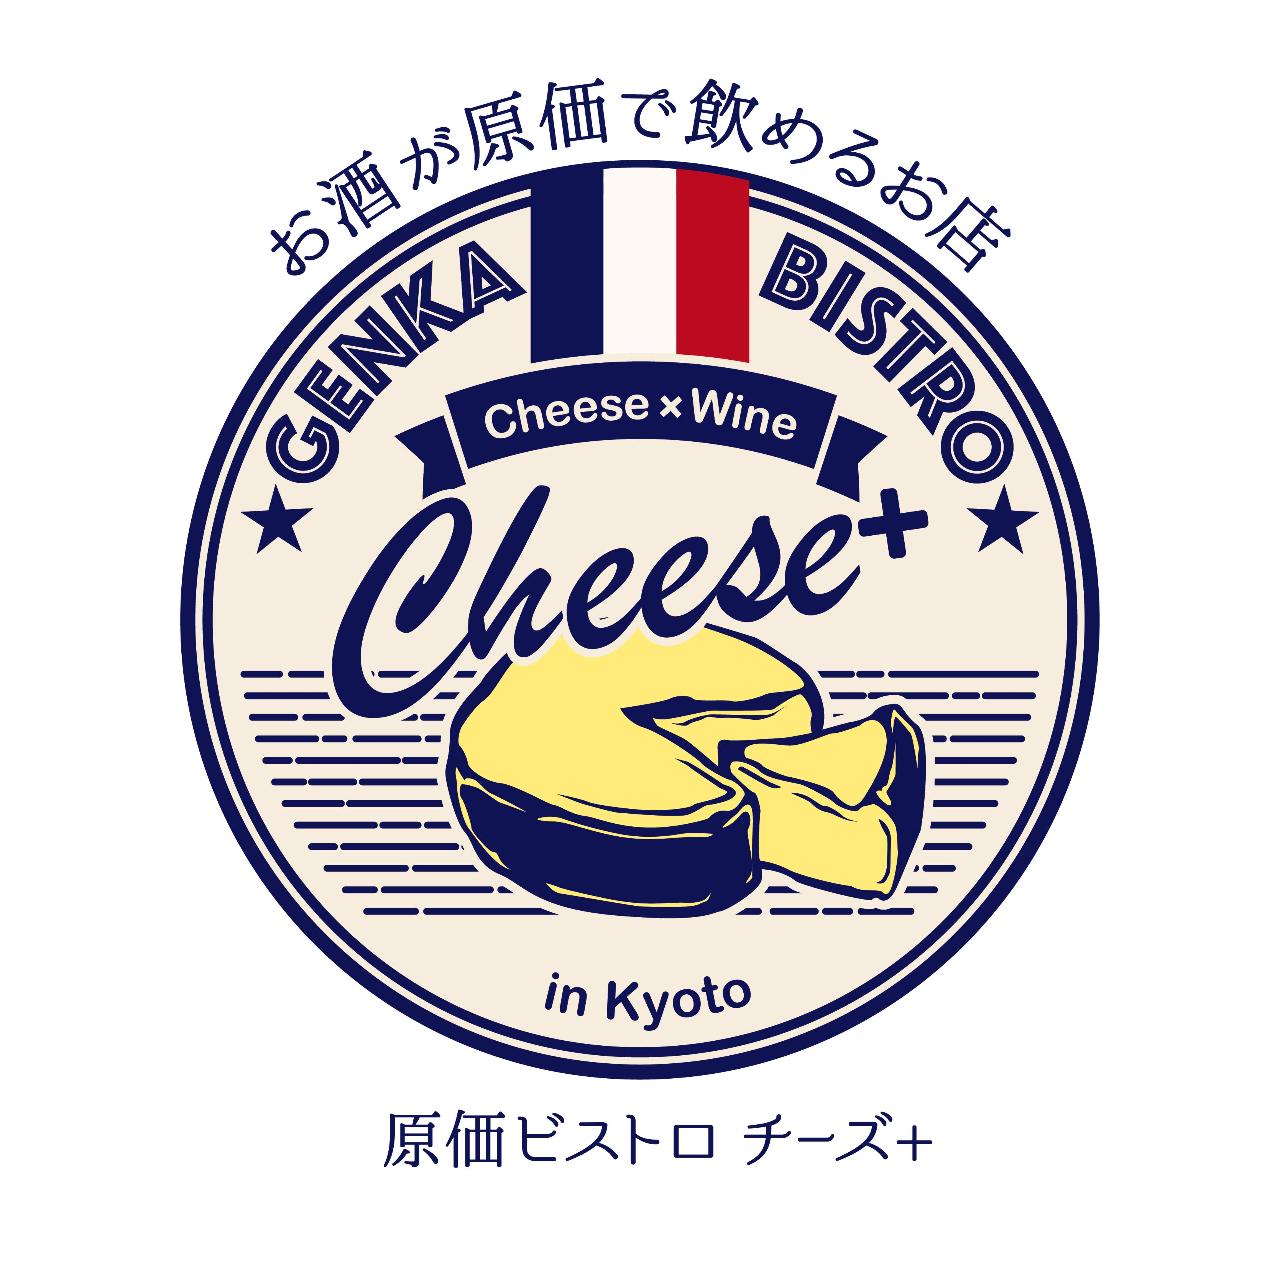 原価ビストロ チーズプラス 京都駅タワー前のURL1